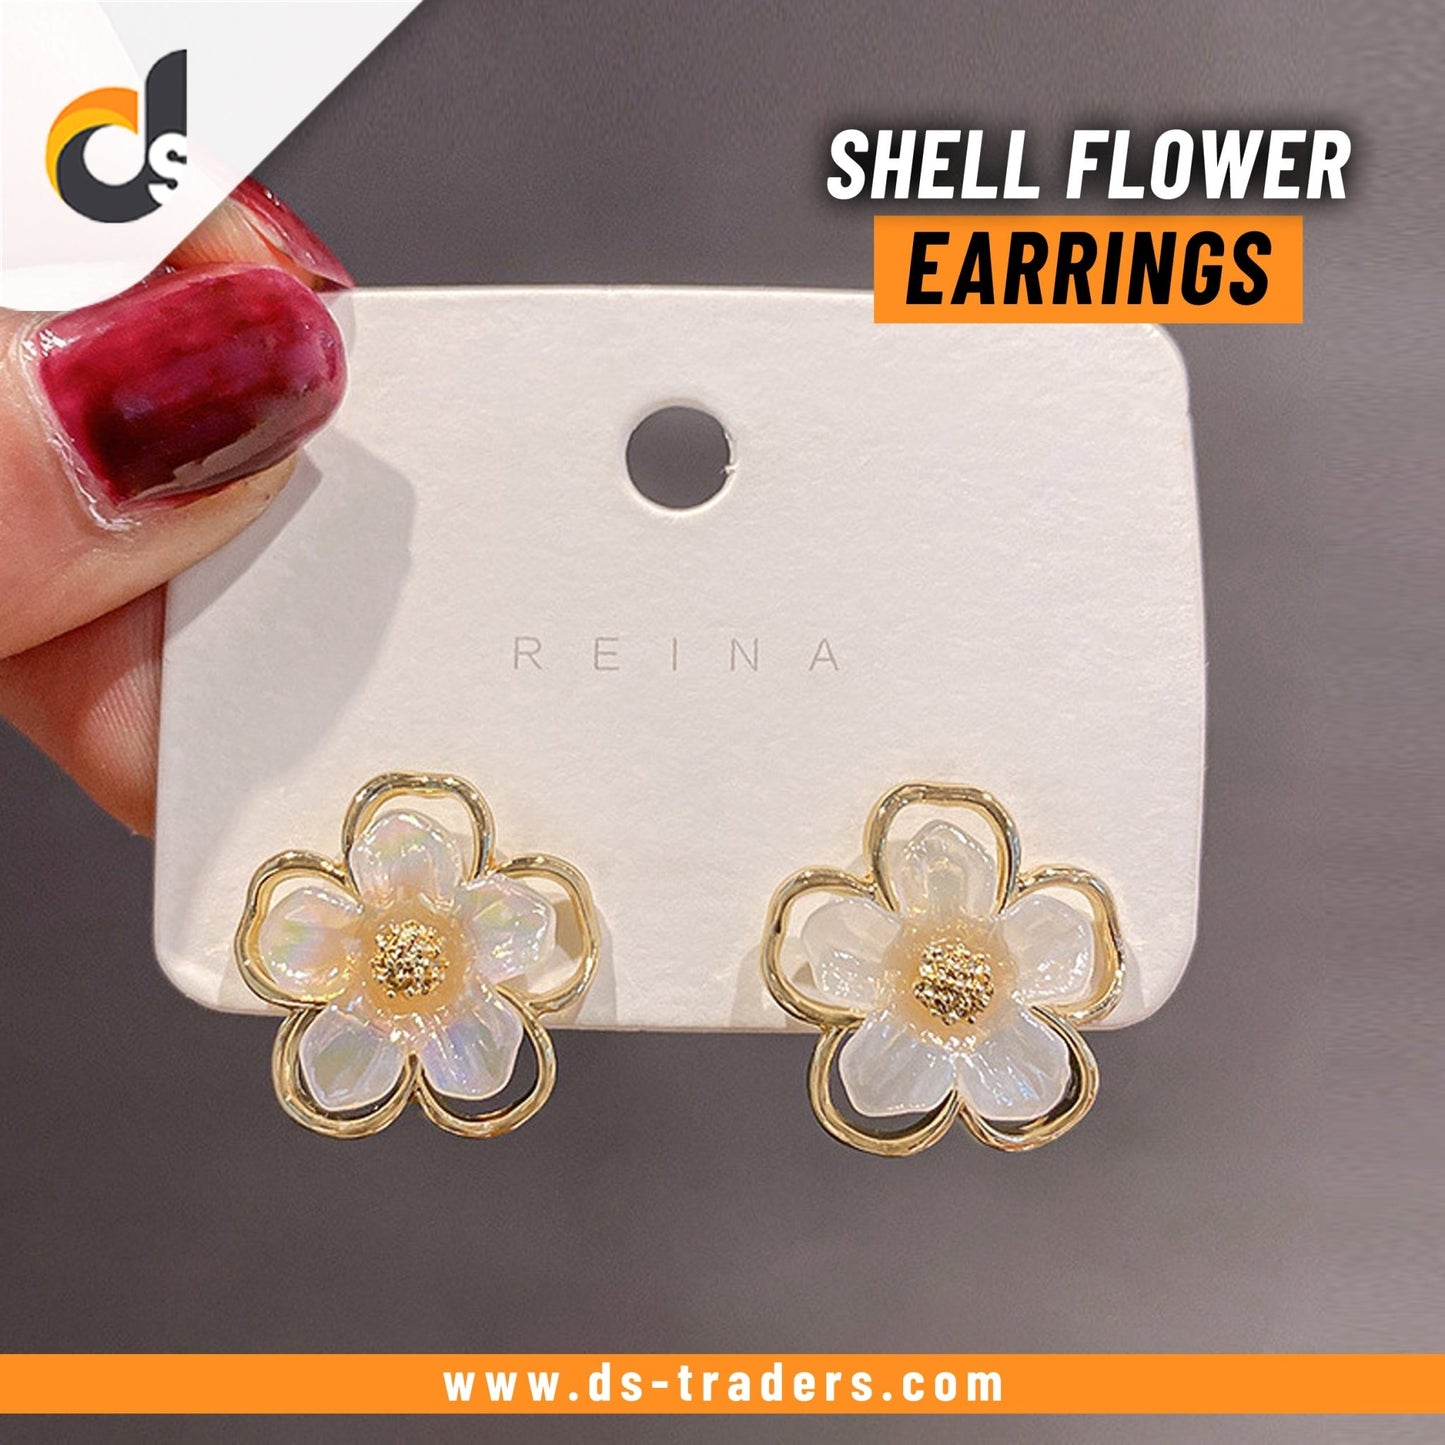 Shell Flower Earrings - DS Traders